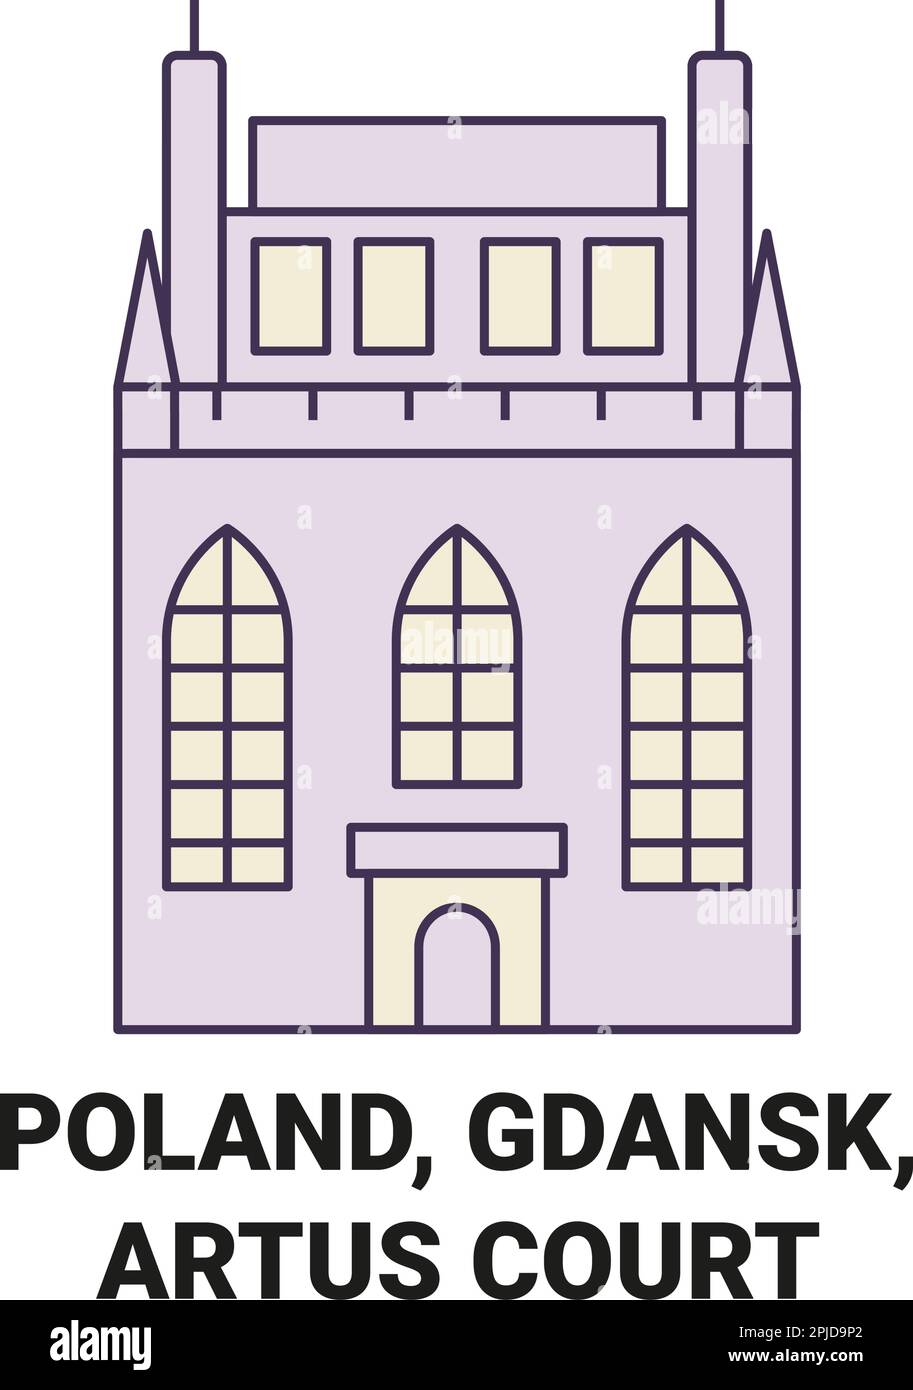 Pologne, Gdansk, Artus court Voyage repère illustration vecteur Illustration de Vecteur